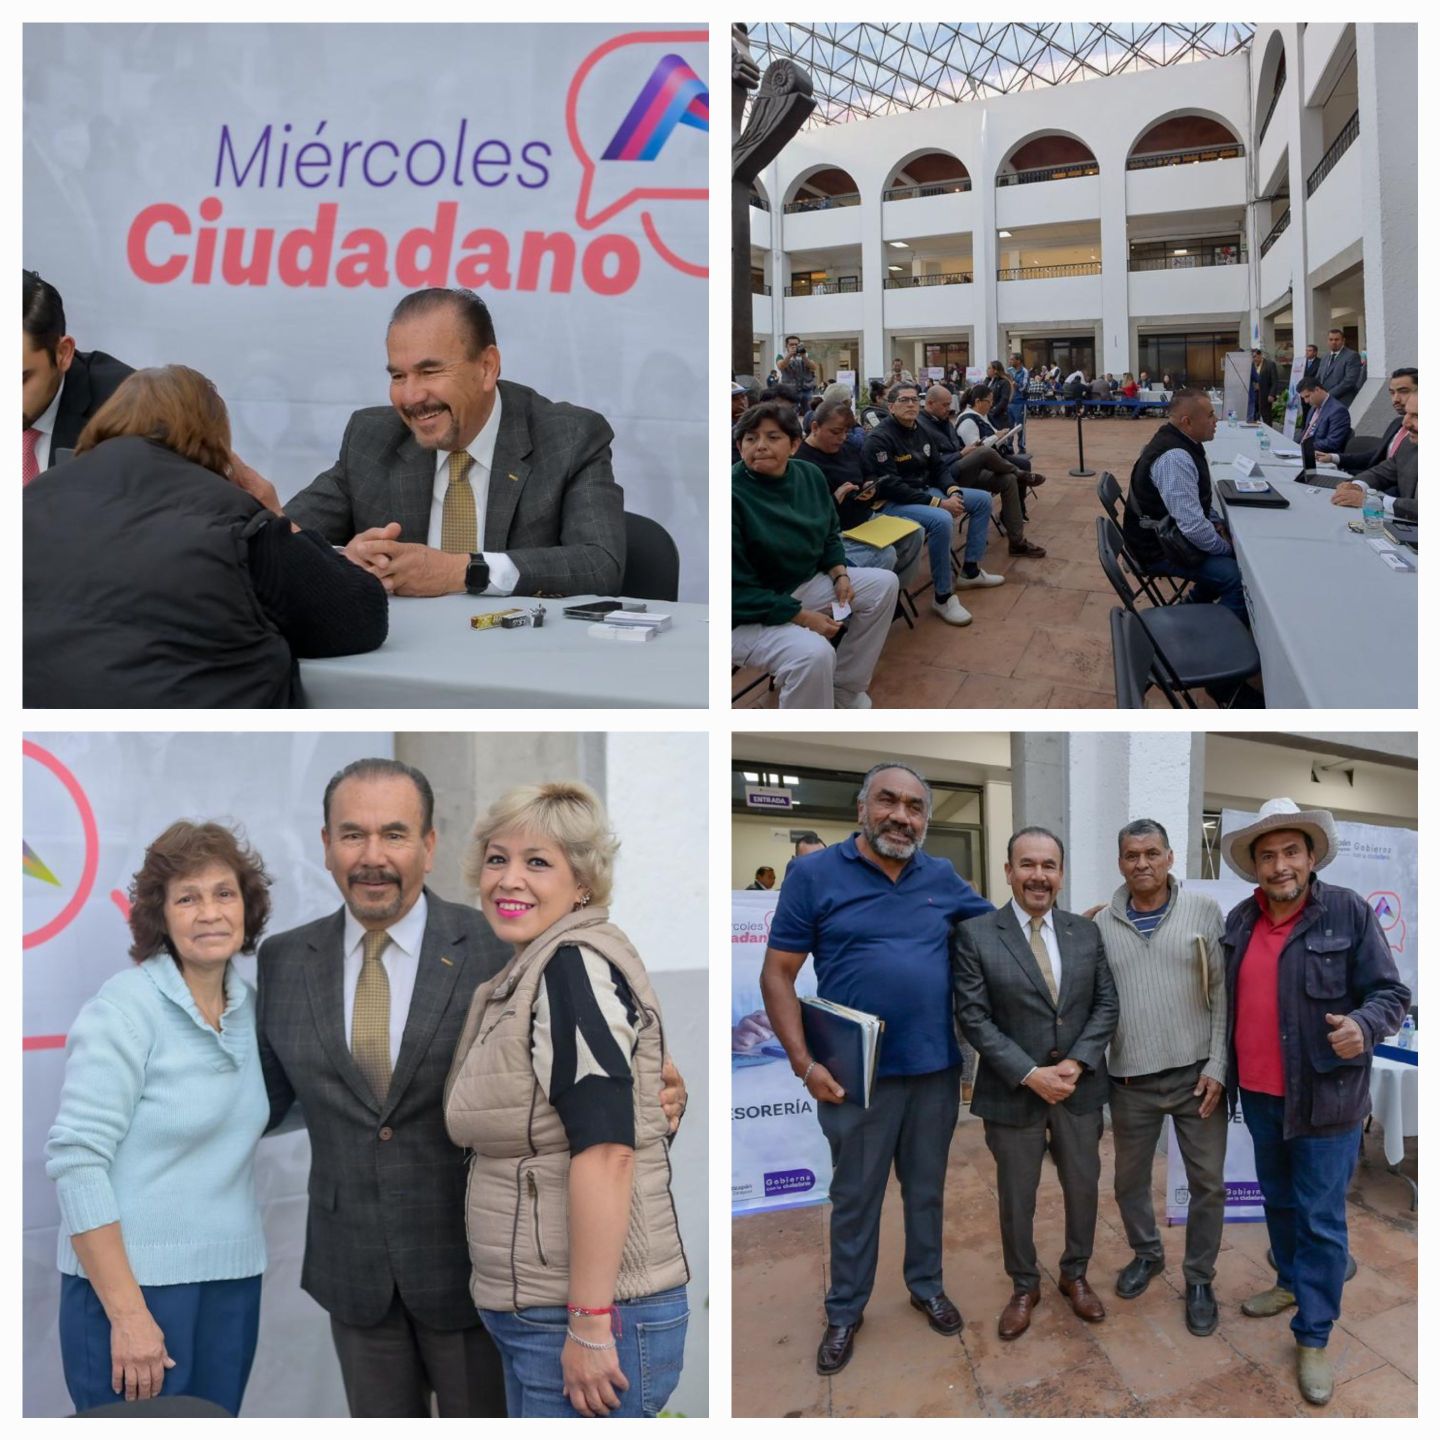 Reanuda Pedro Rodríguez los miércoles ciudadanos; asistentes agradecen al alcalde su atención y cercanía 